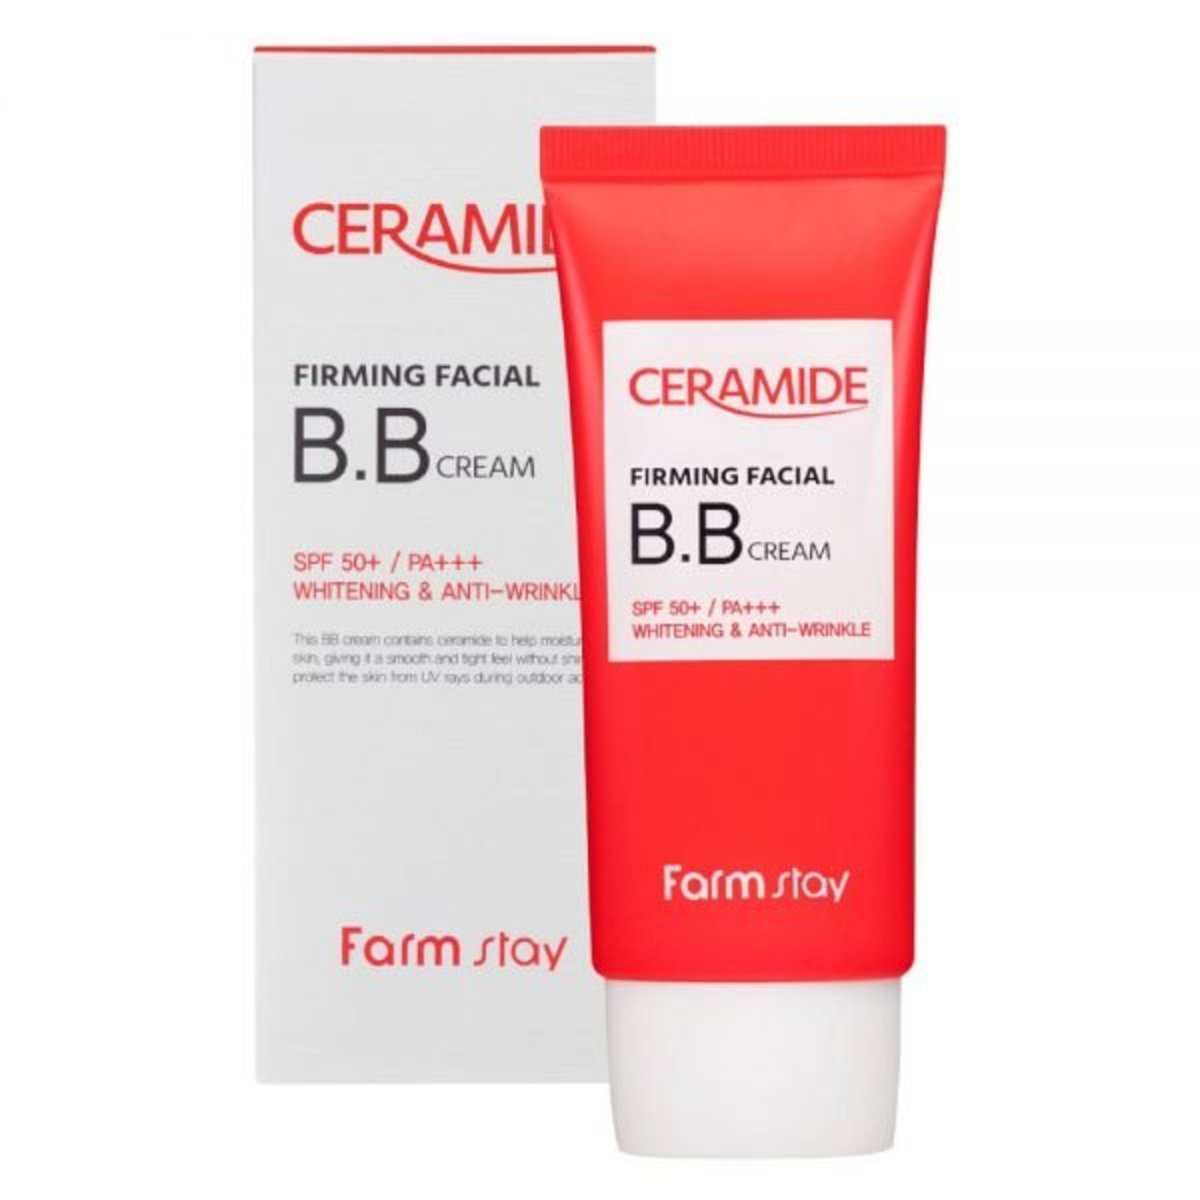 Ceramide Firming Facial BB Cream SPF50+ / PA+++ 50g